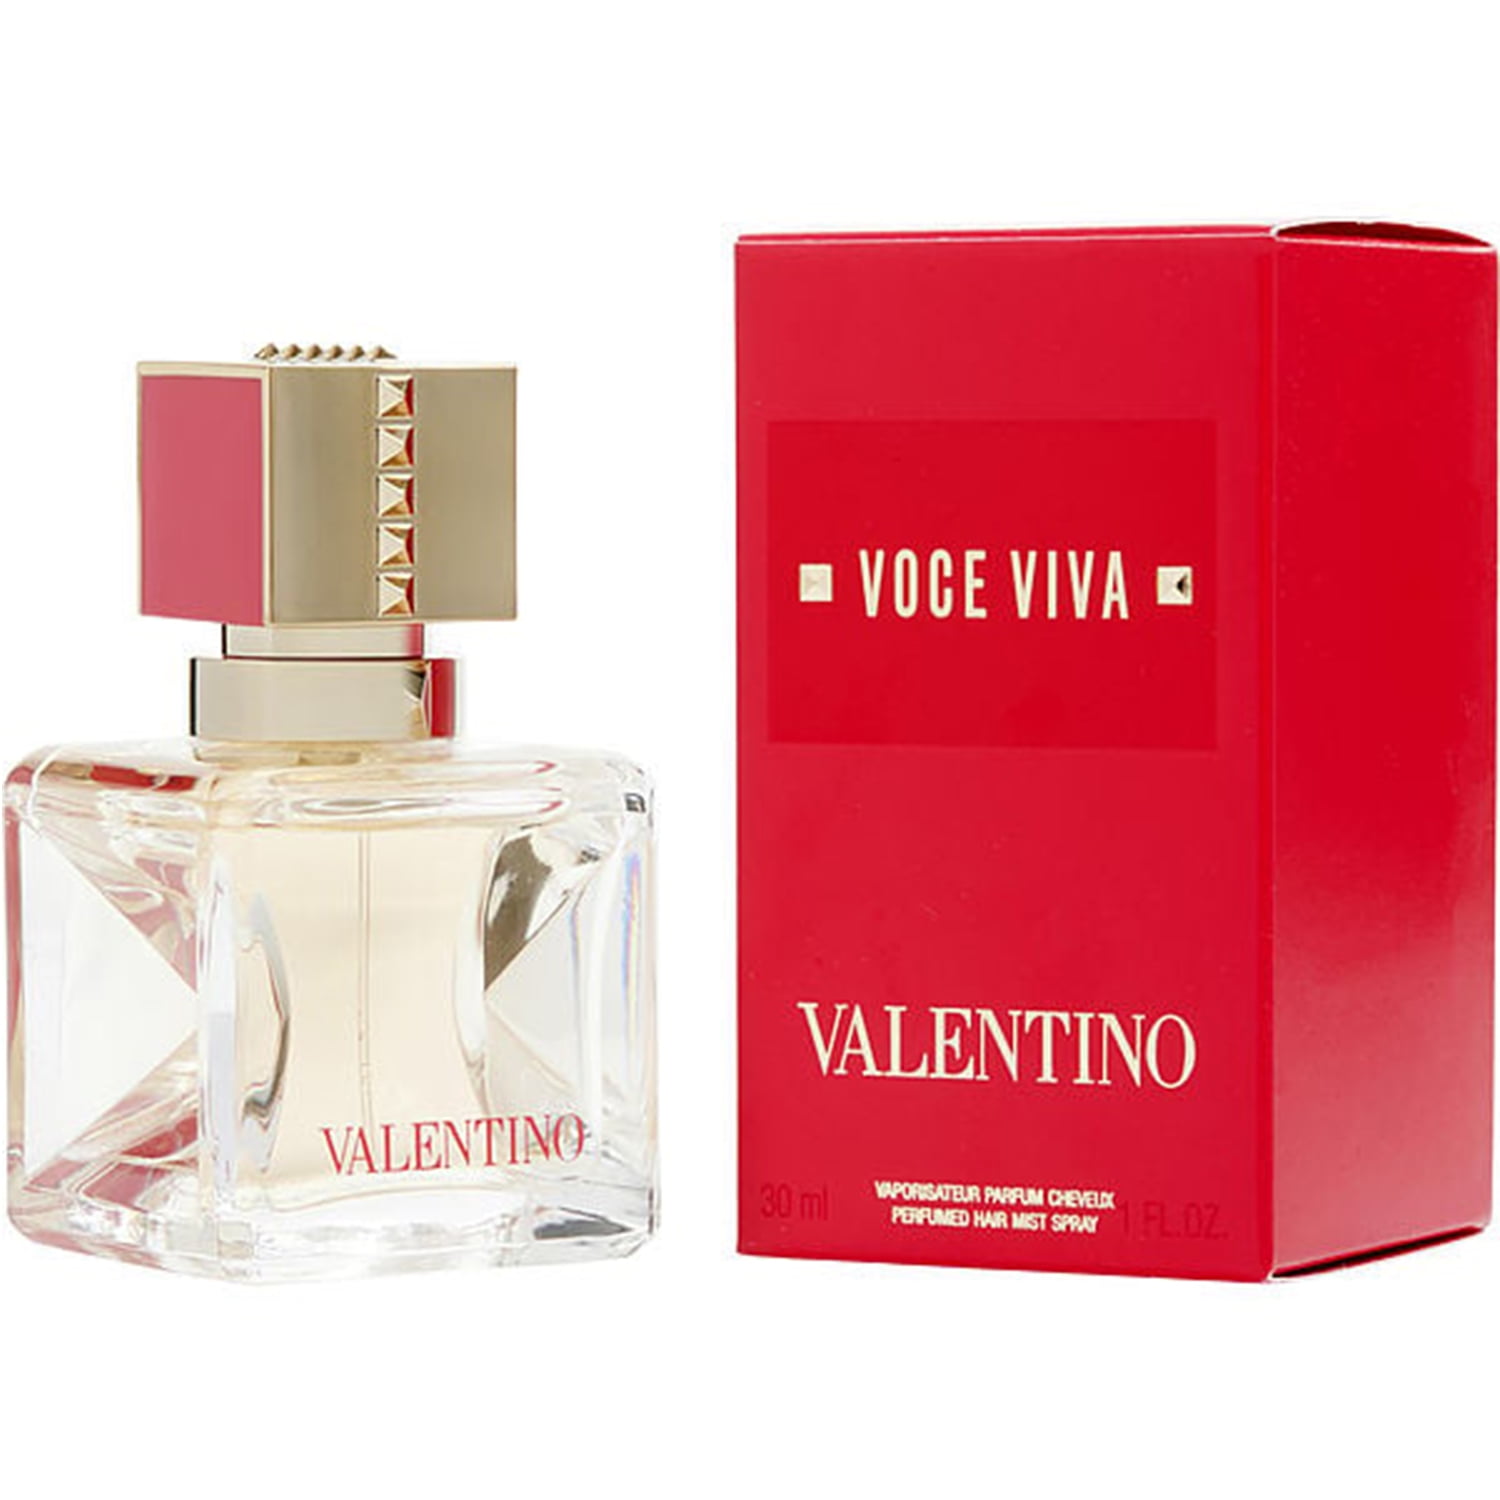 Pak at lægge Afhængig sælge Valentino - Voce Viva Eau De Parfum Spray, 30ml / 1 fl. oz - Walmart.com